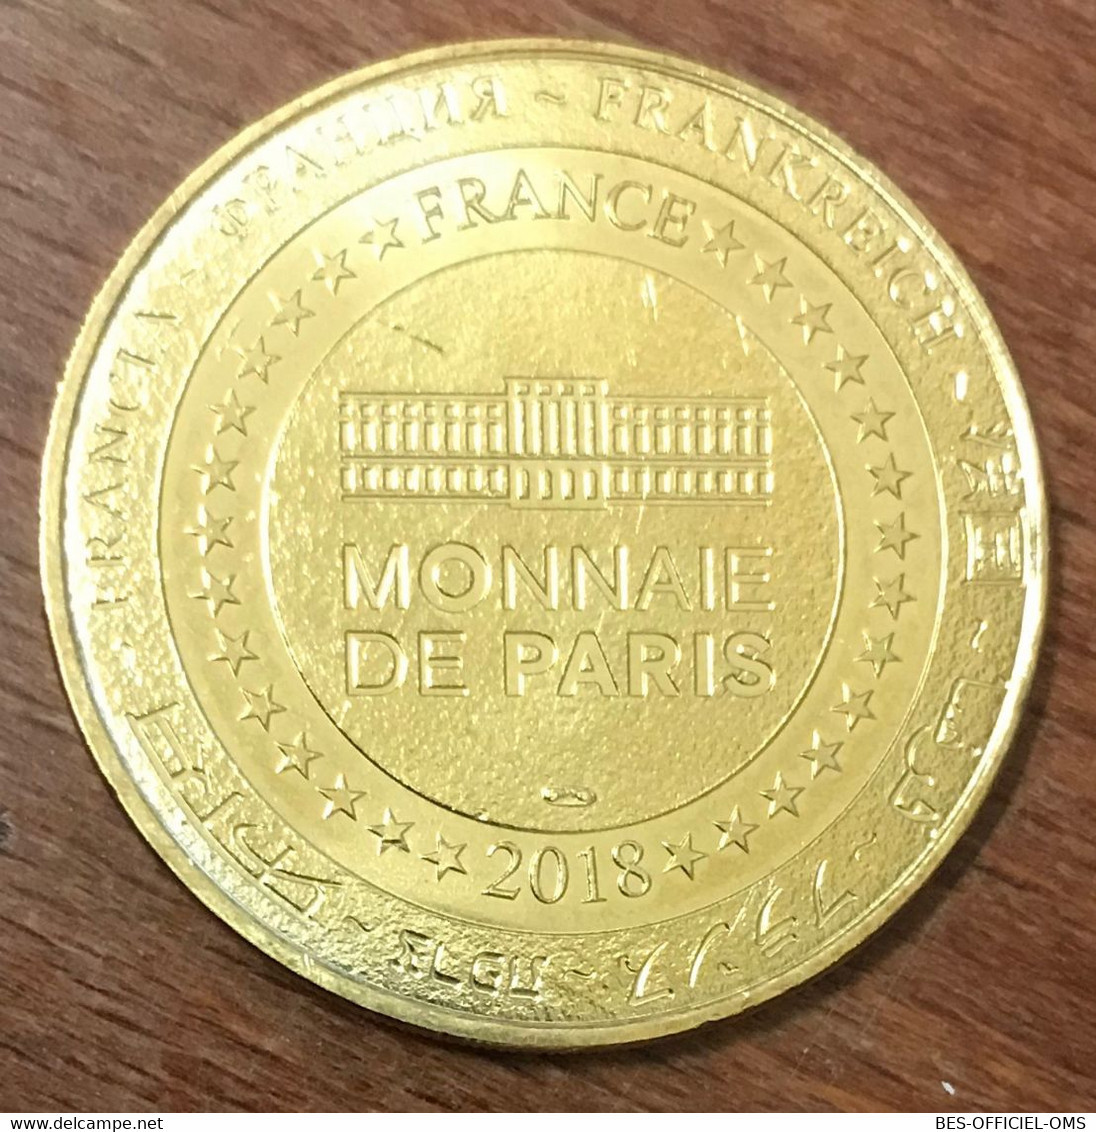 24 CASTELNAUD CHÂTEAU DES MILANDES MDP 2018 MÉDAILLE SOUVENIR MONNAIE DE PARIS JETON TOURISTIQUE MEDALS TOKENS COINS - 2018